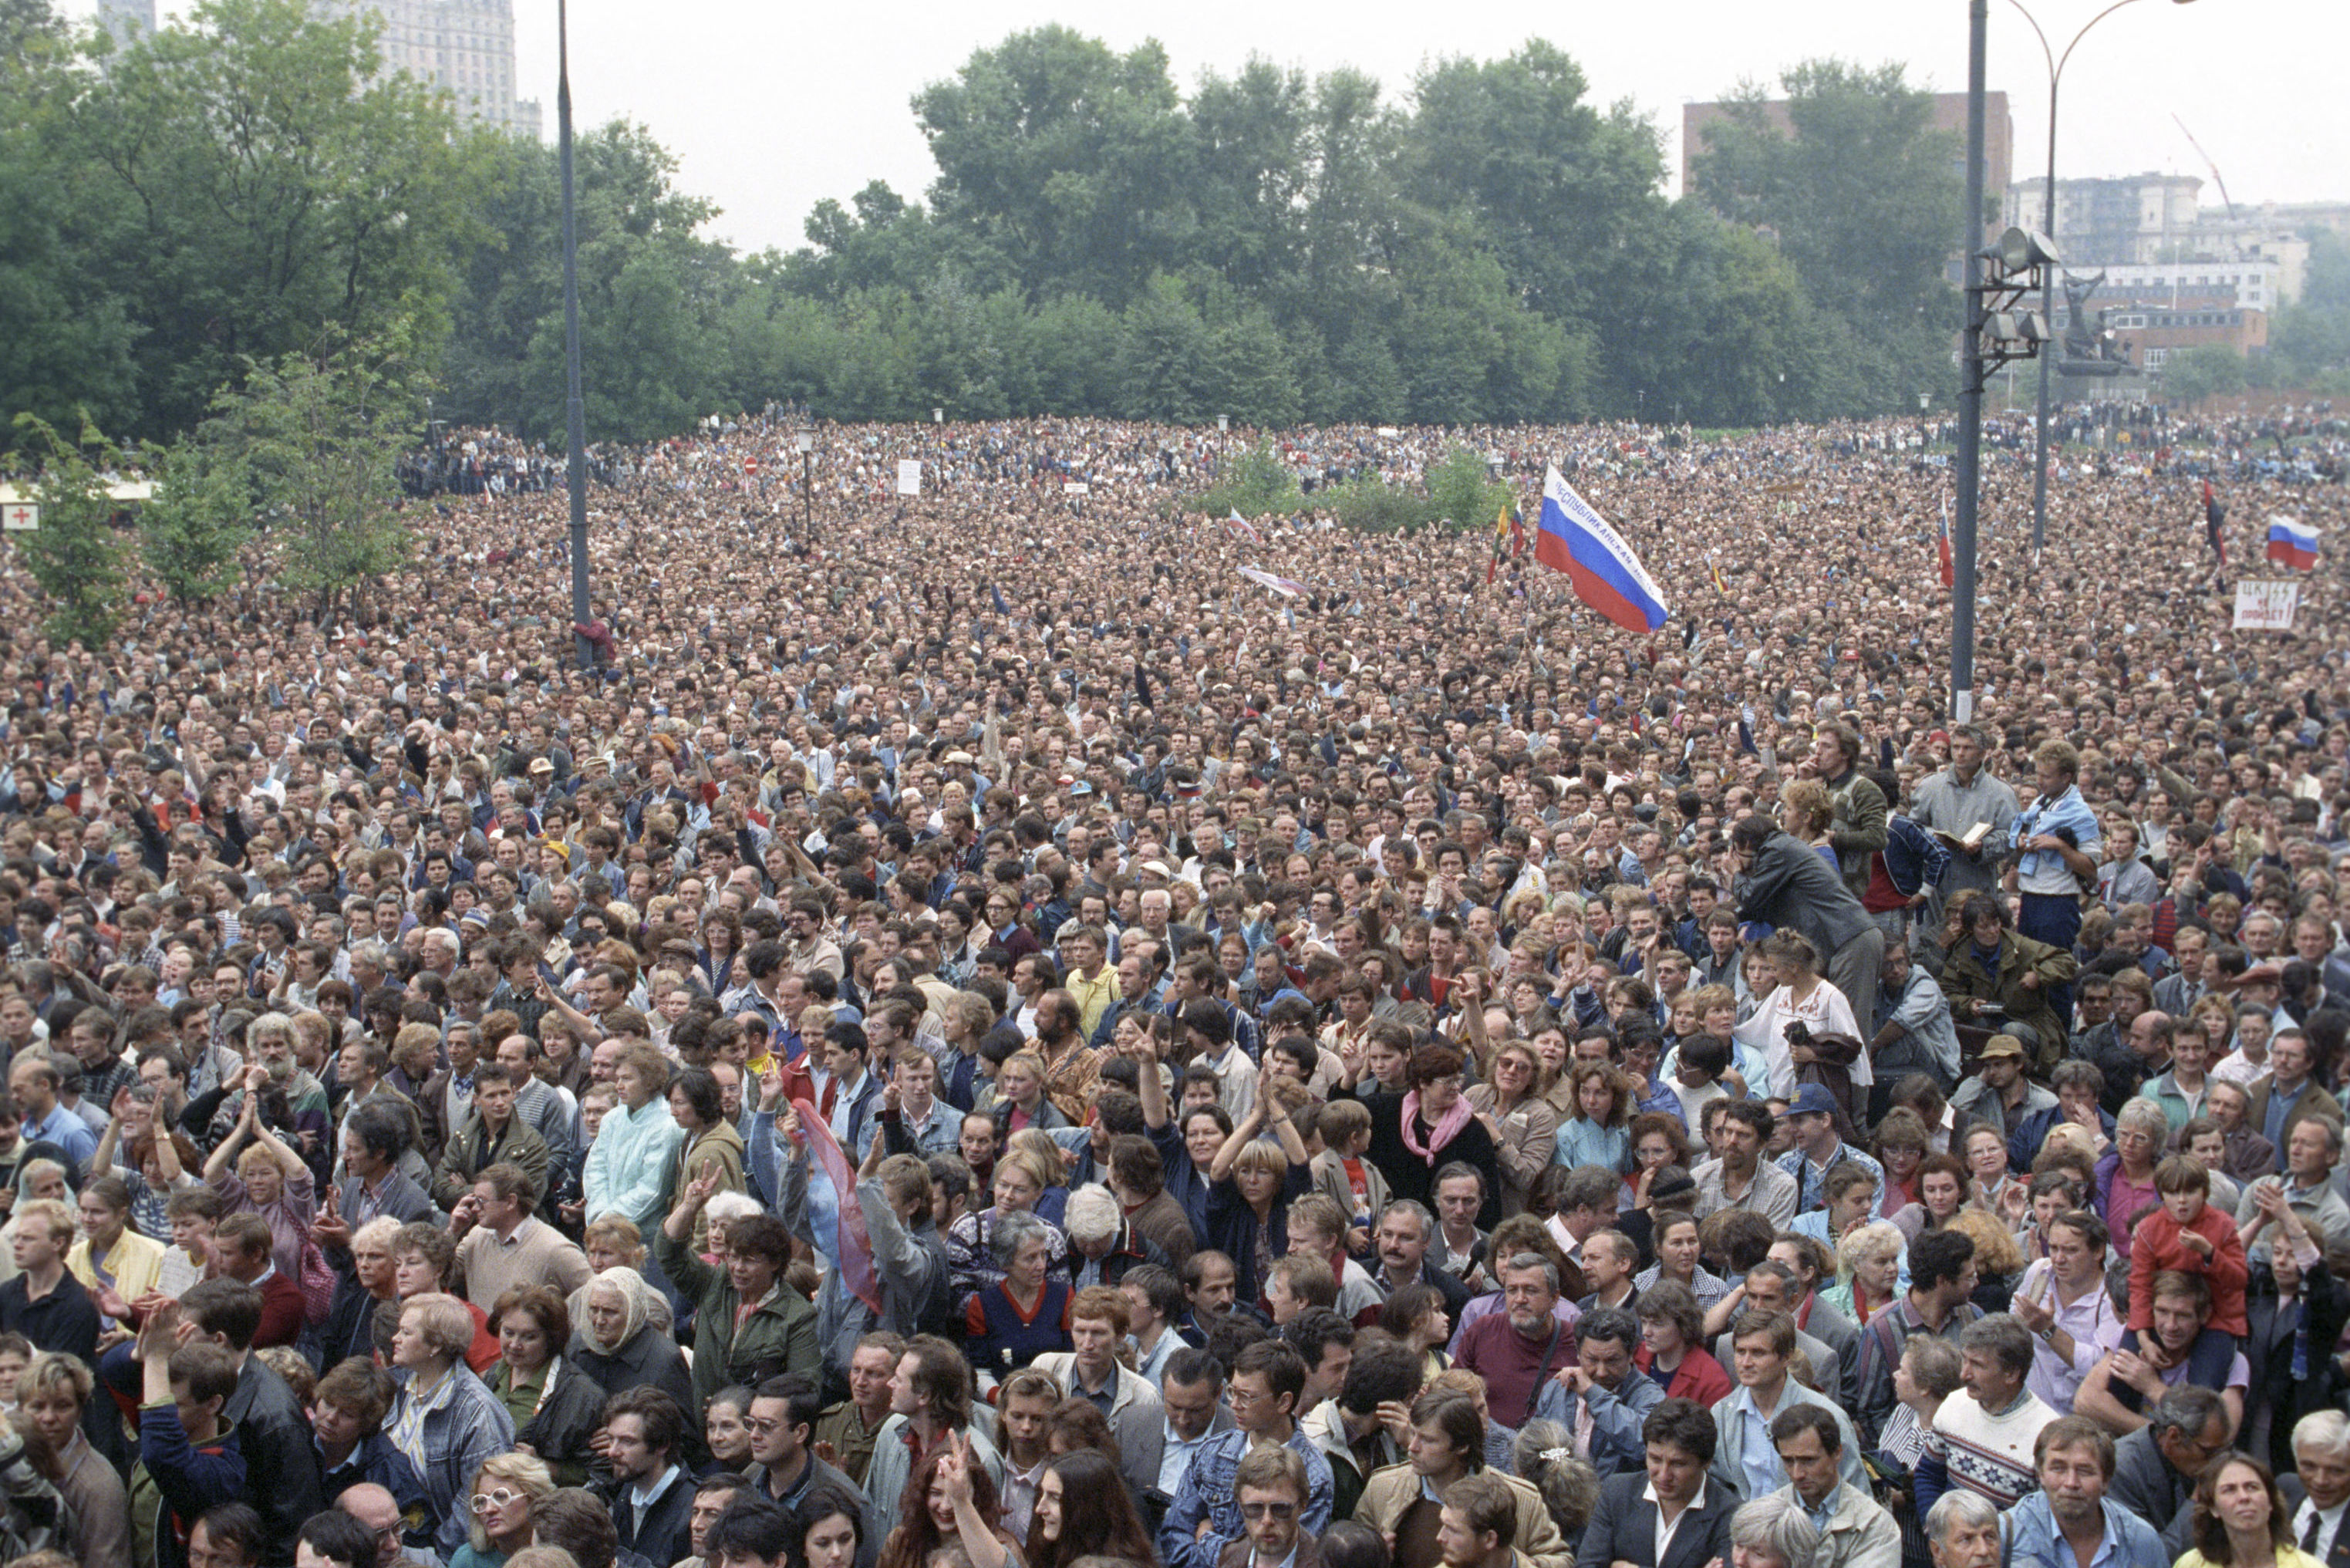 Митинг перед зданием Верховного Совета РСФСР 22 августа 1991 года, прошедший в ознаменование победы демократии. Августовский путч 1991 года.